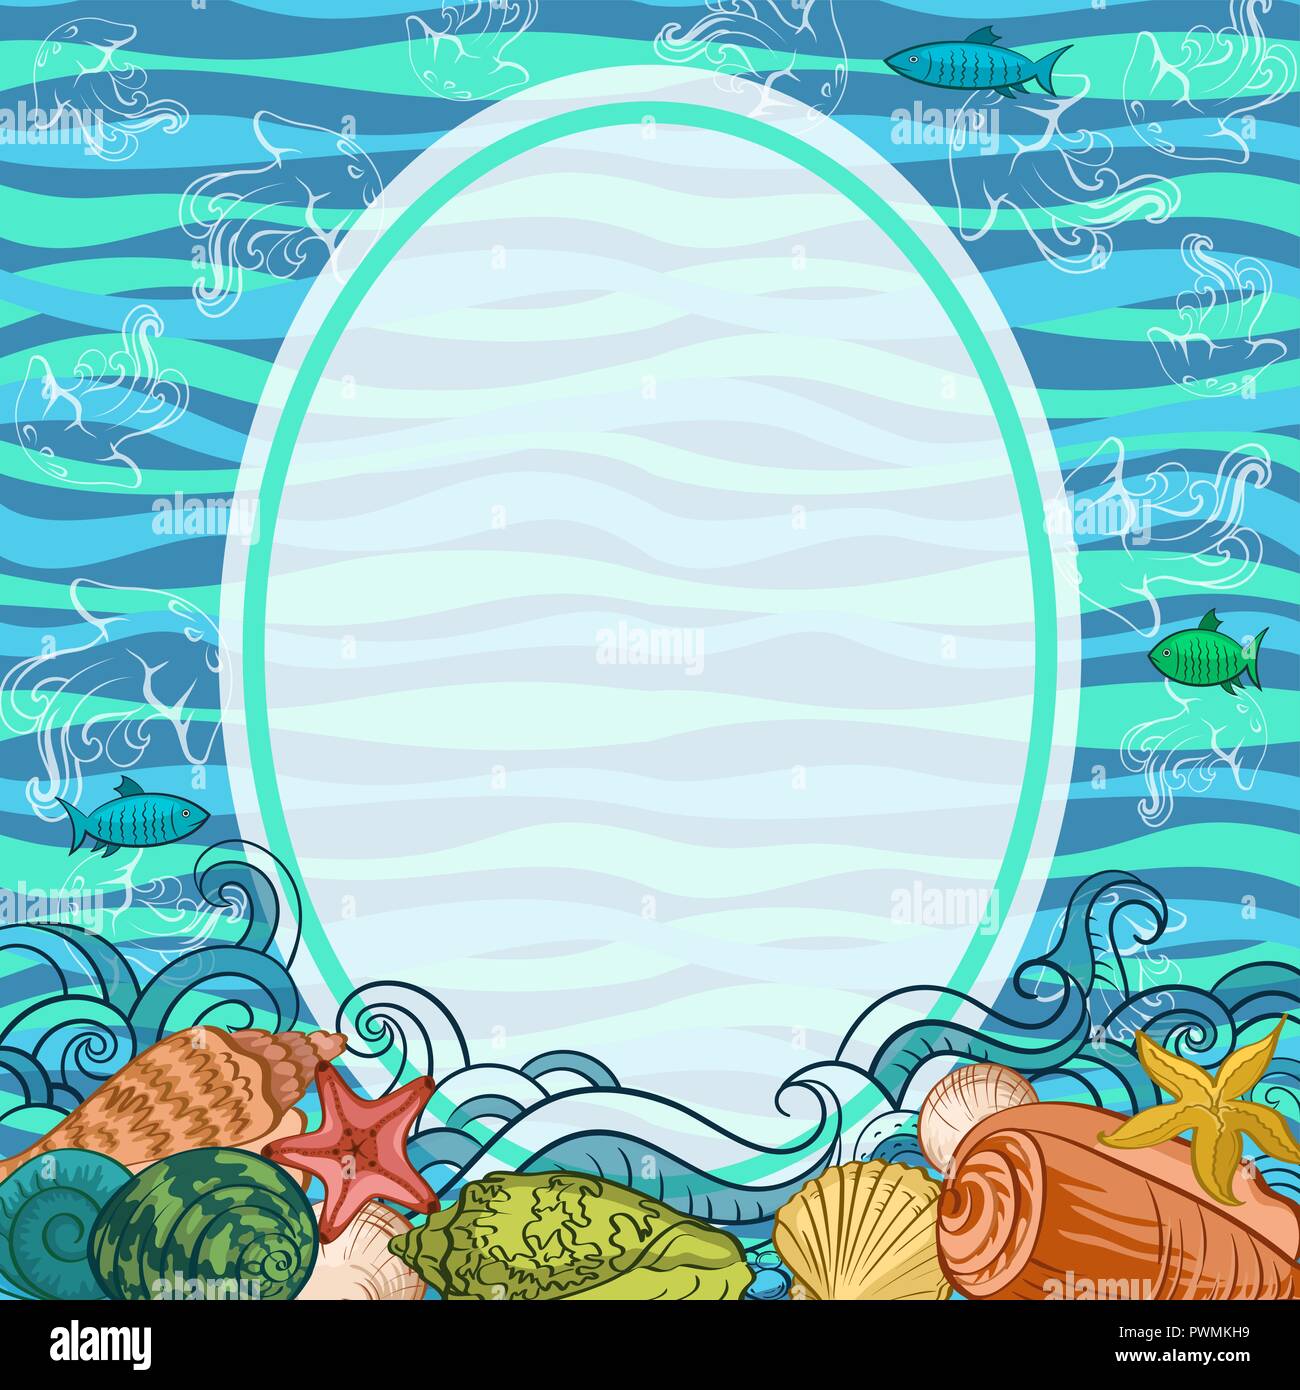 Modèle exotiques de la mer, coquillages, poissons, étoiles de mer et des contours colorés sur un fond vague bleue et verte. Vector Illustration de Vecteur